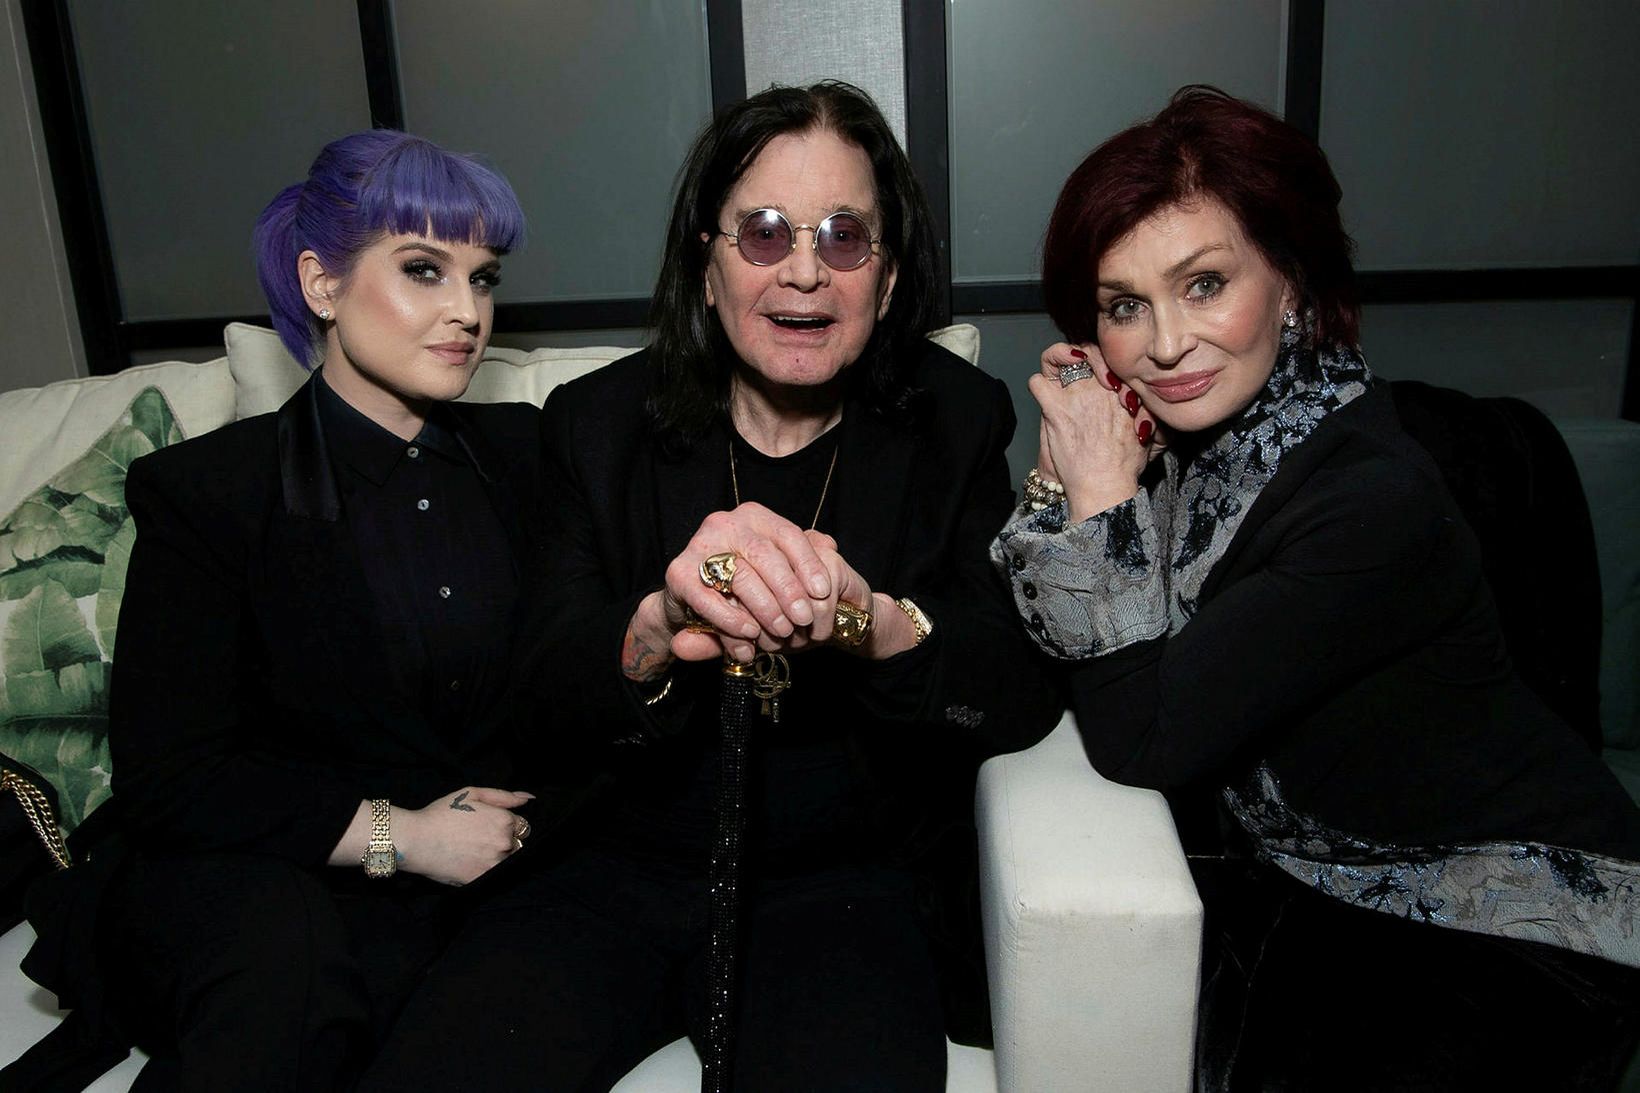 Ozzy Osbourne ásamt dóttur sinni Kelly Osbourne og eiginkonunni Sharon …